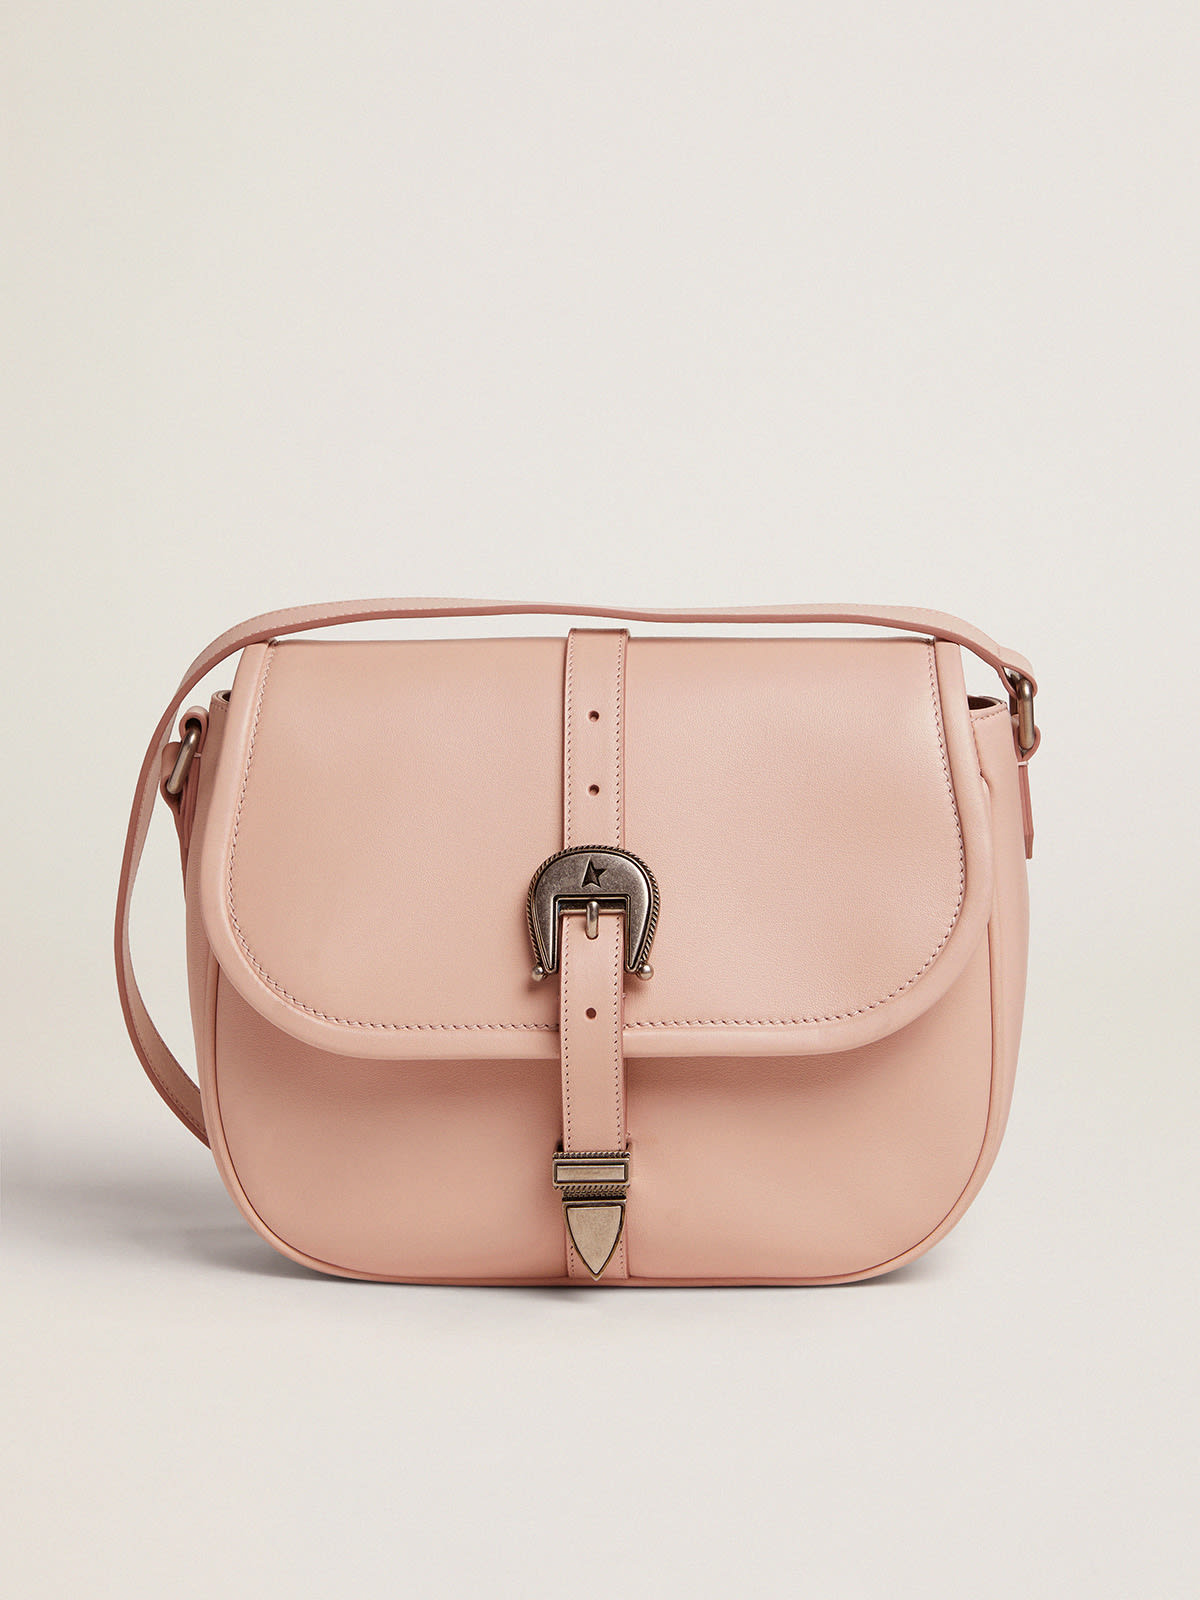 Golden Goose - Medium Rodeo Bag in quartz-pink leather in 